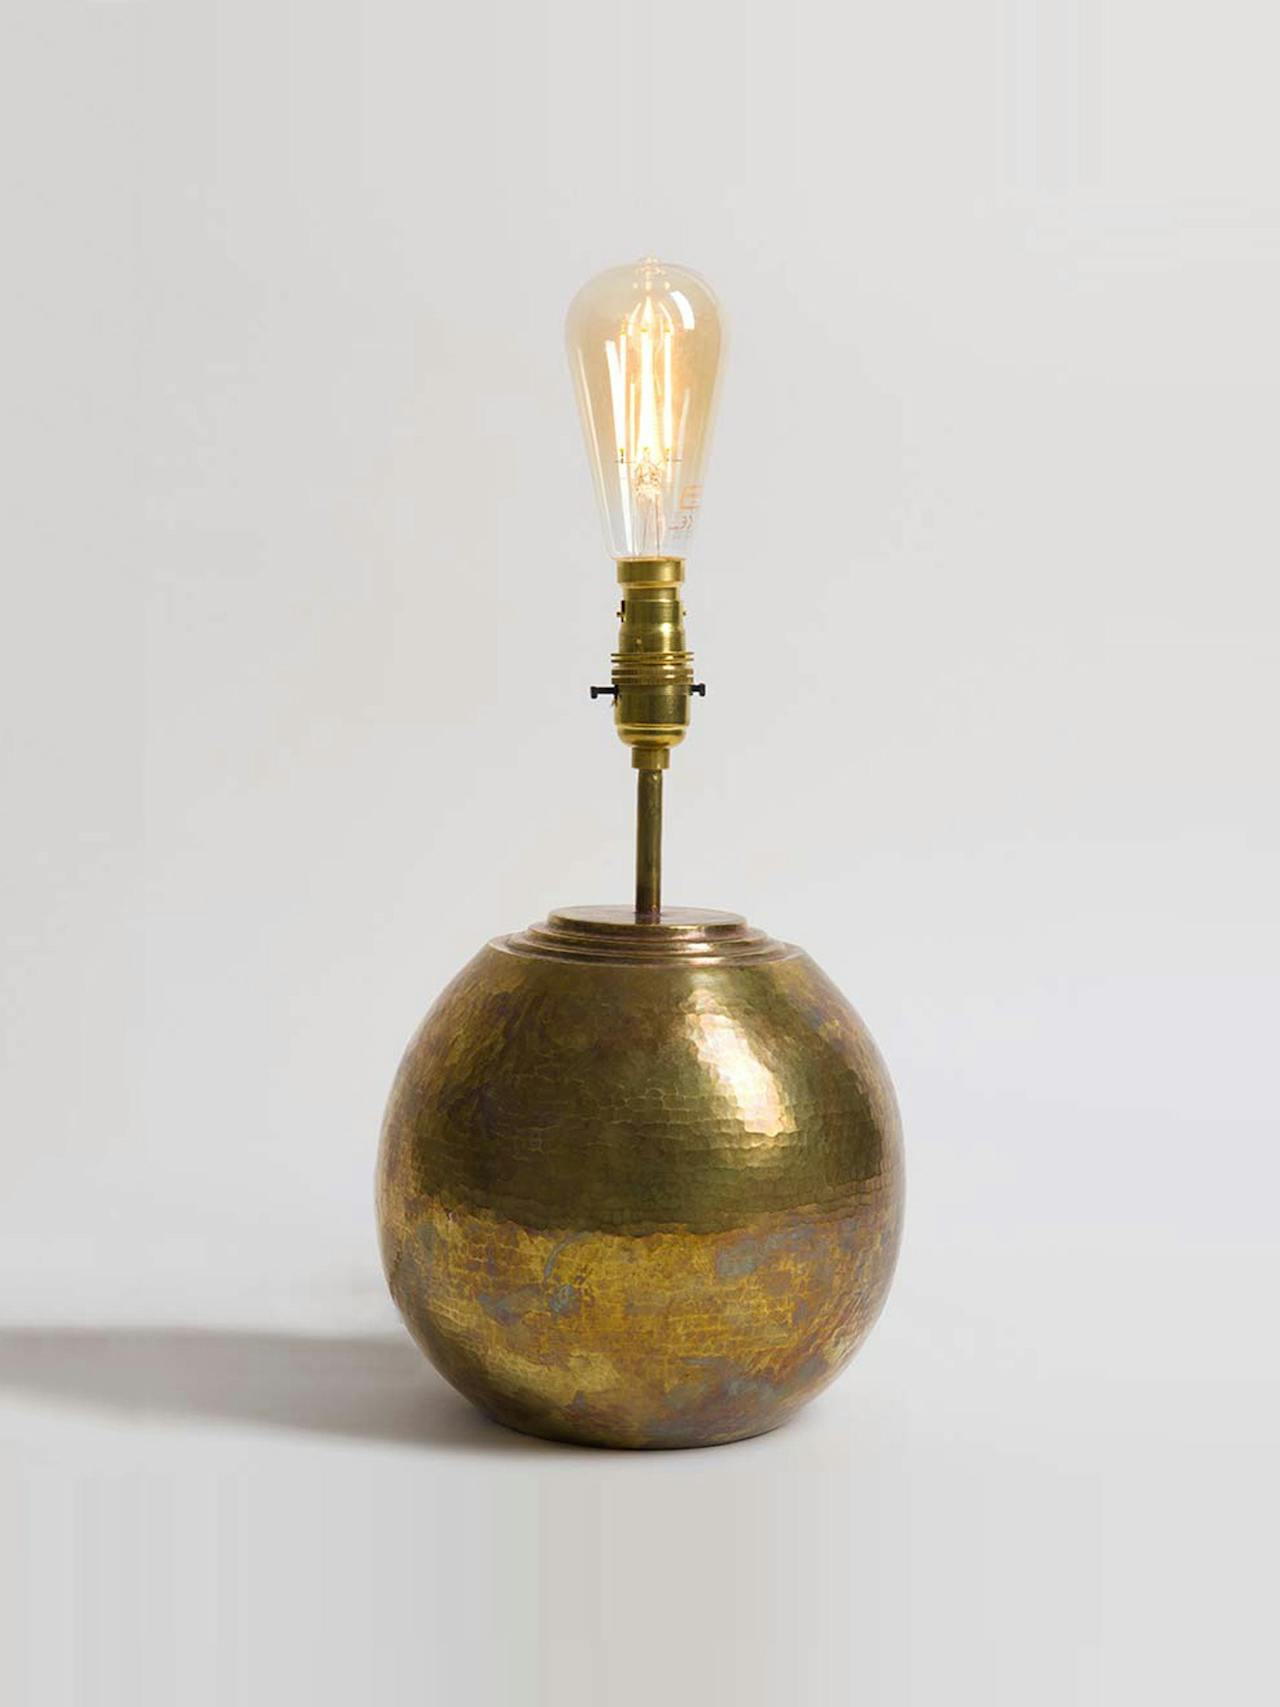 Irrawaddy brass lamp base